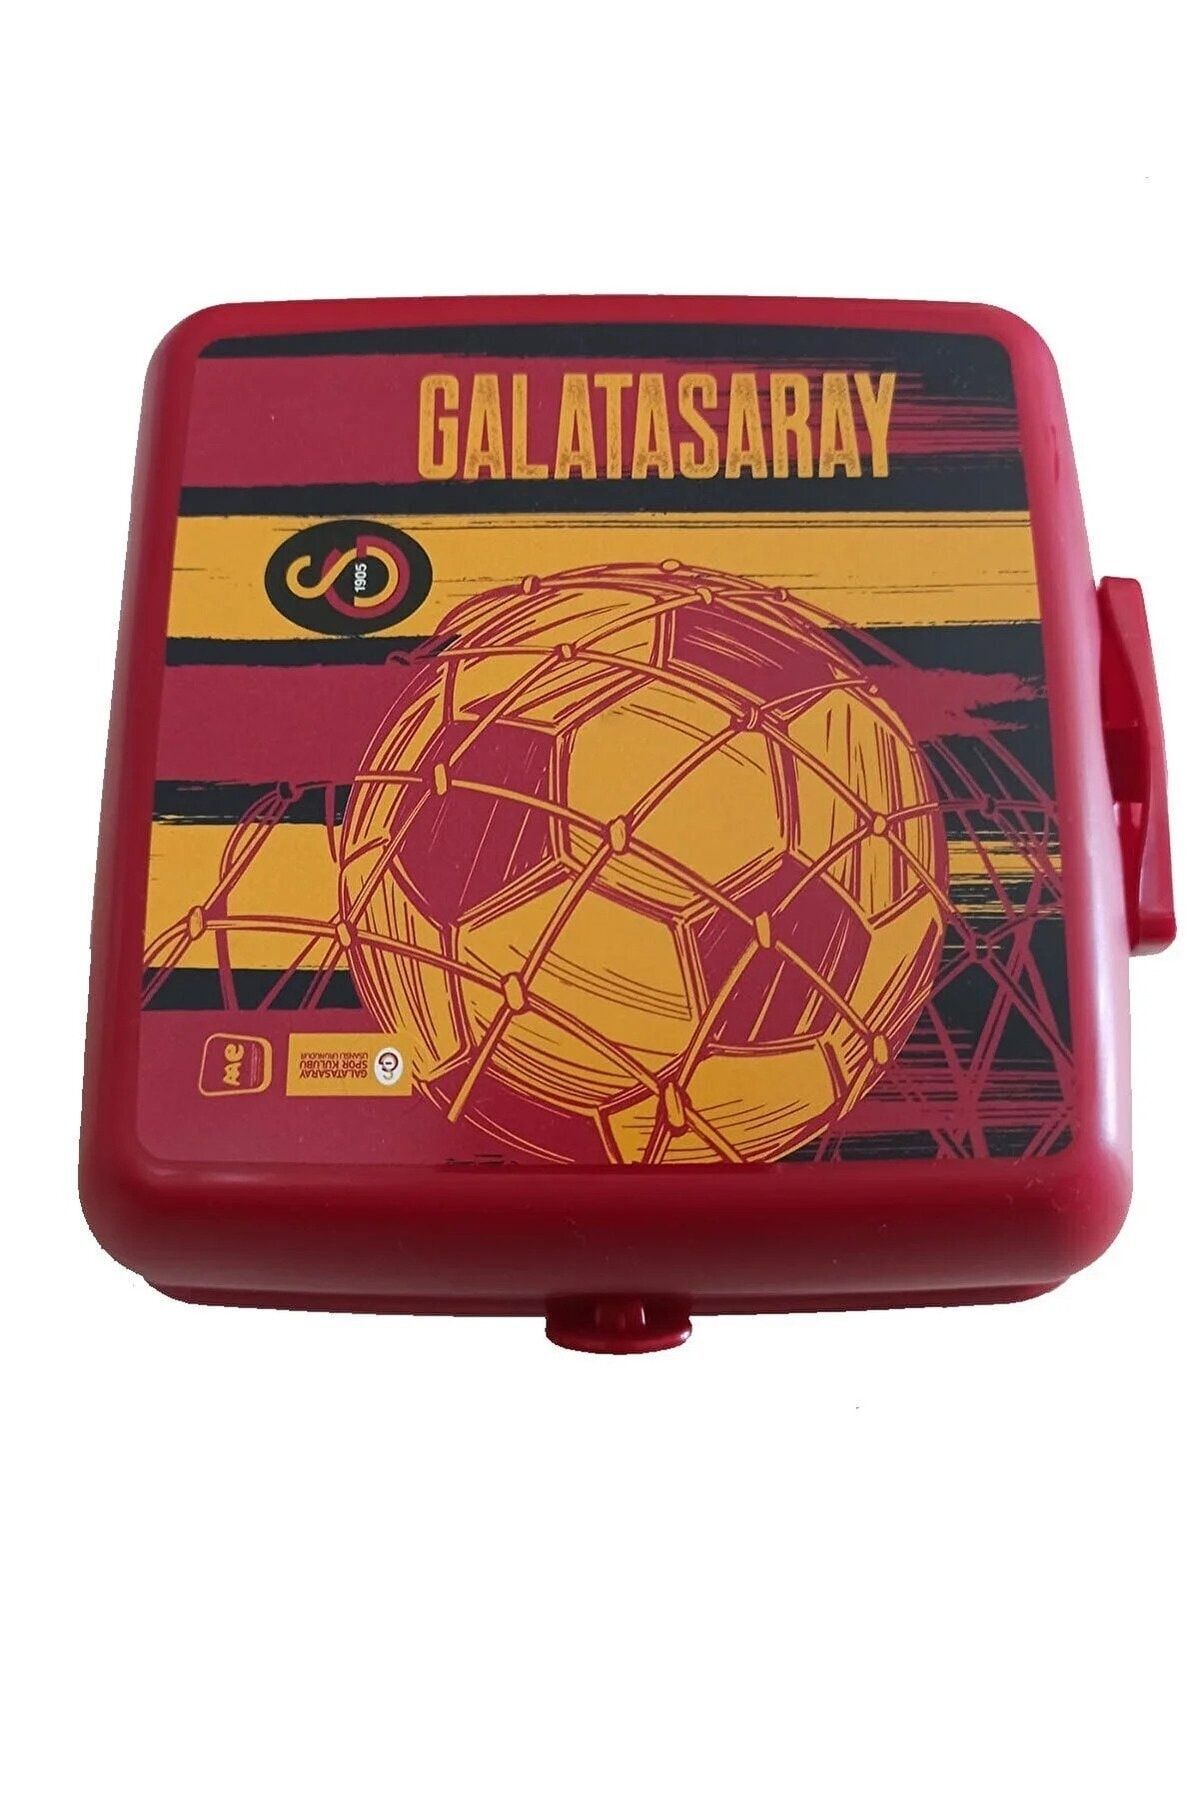 Galatasaray Plastik Beslenme Kabı Çatal Kaşıklı Beslenme Kabı